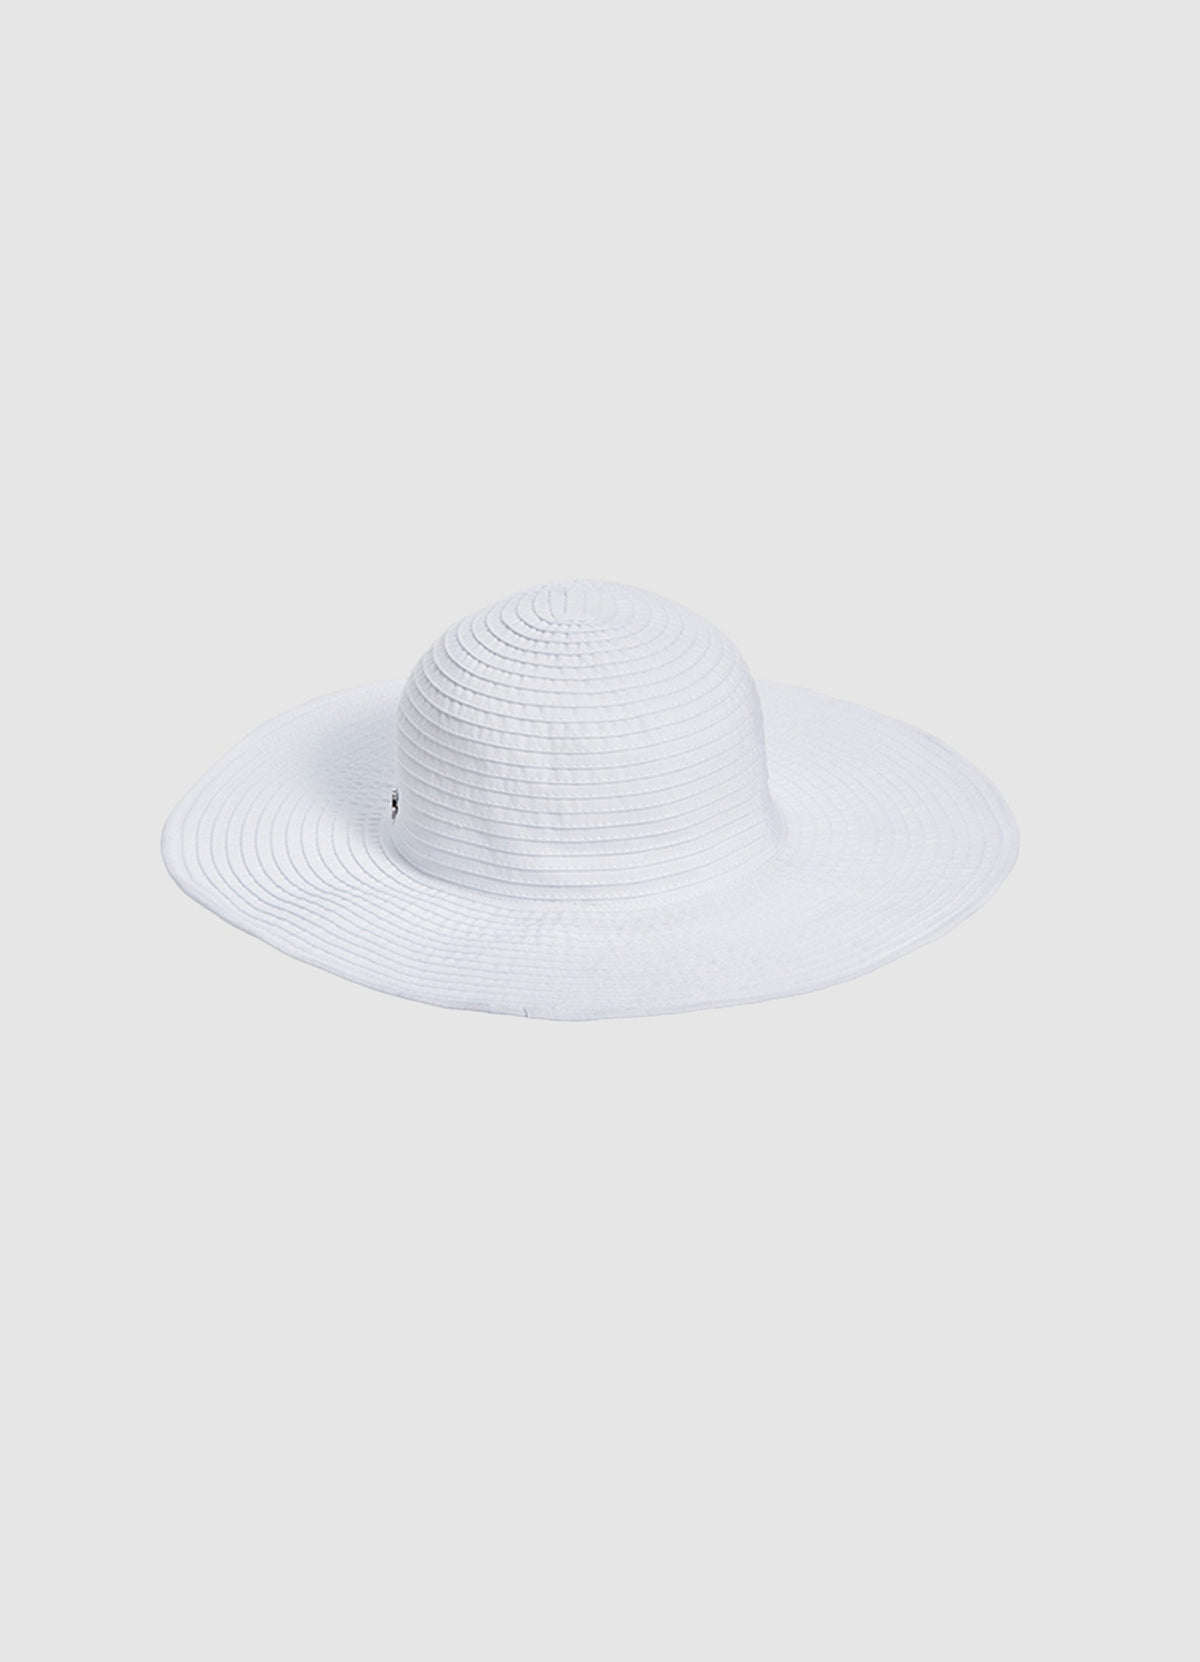 Lizzy Hat - Seafolly - Splash Swimwear  - hats, June22, new accessories, new arrivals, Seafolly - Splash Swimwear 